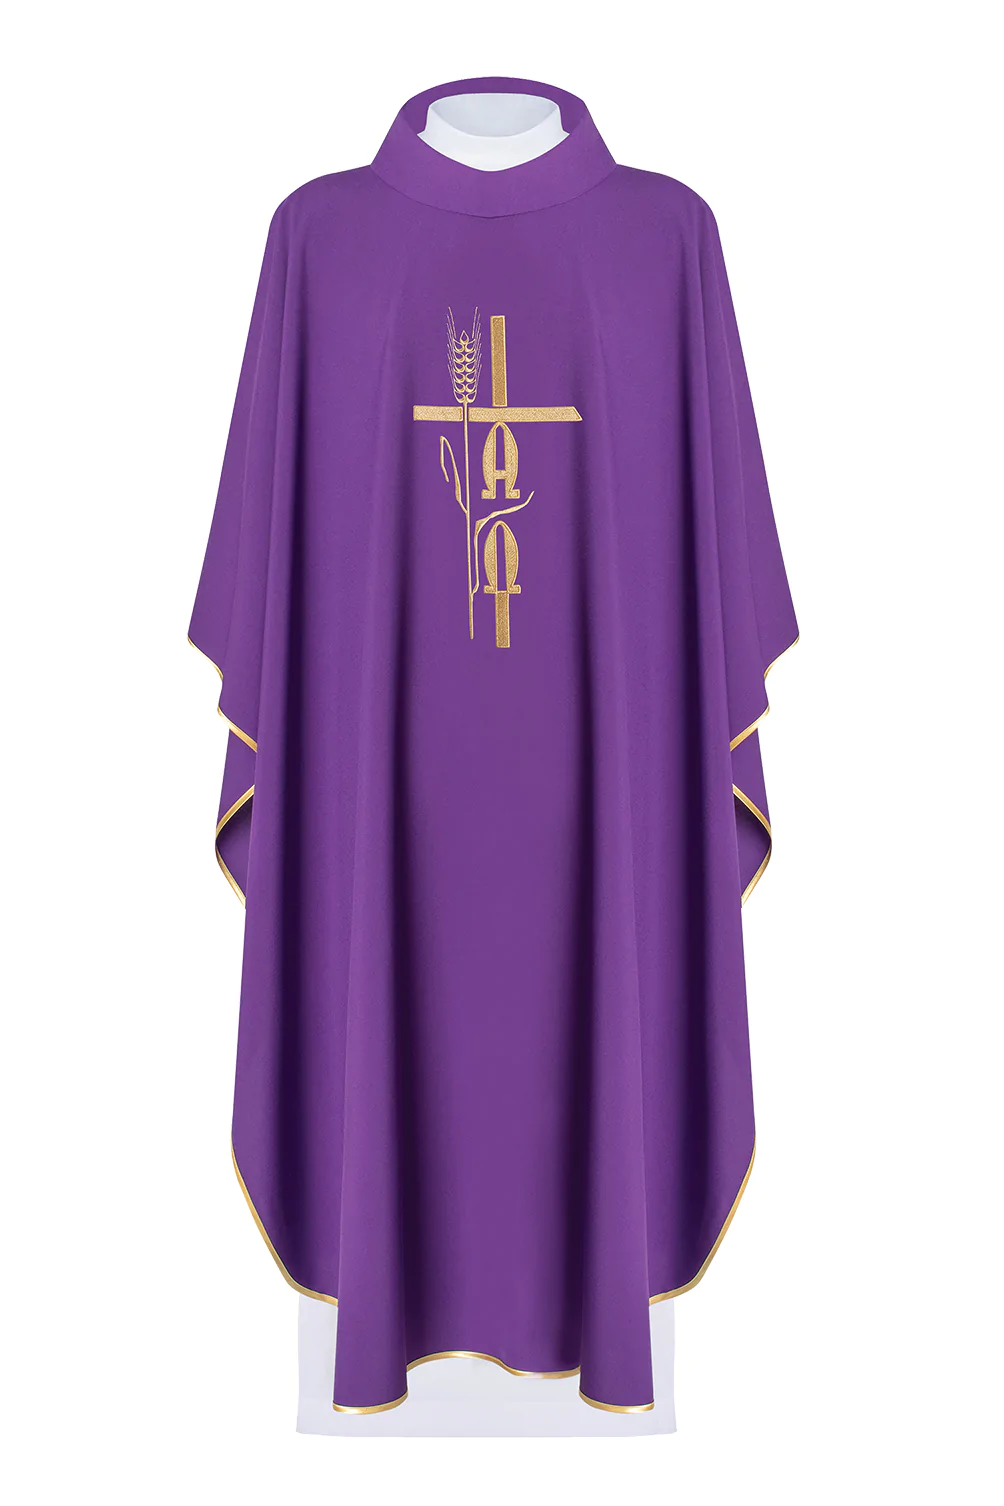 ornat fioletowy dla księdza zdobiony złotym symbolem Alfa Omega na klatce piersiowej